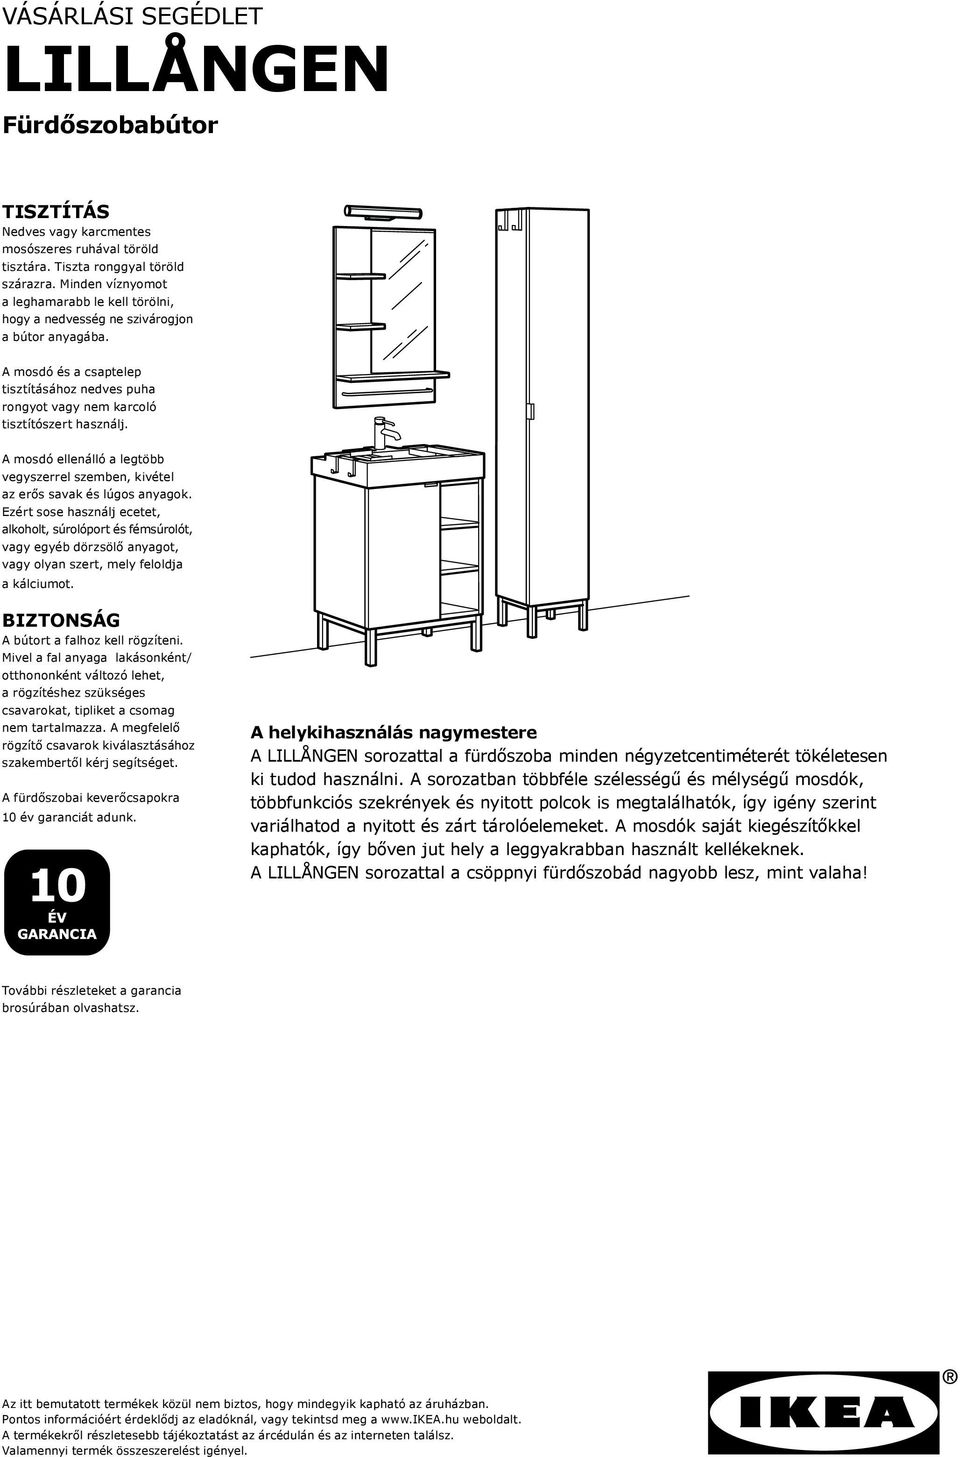 VÁSÁRLÁSI SEGÉDLET LILLÅNGEN. Fürdőszobabútor - PDF Ingyenes letöltés